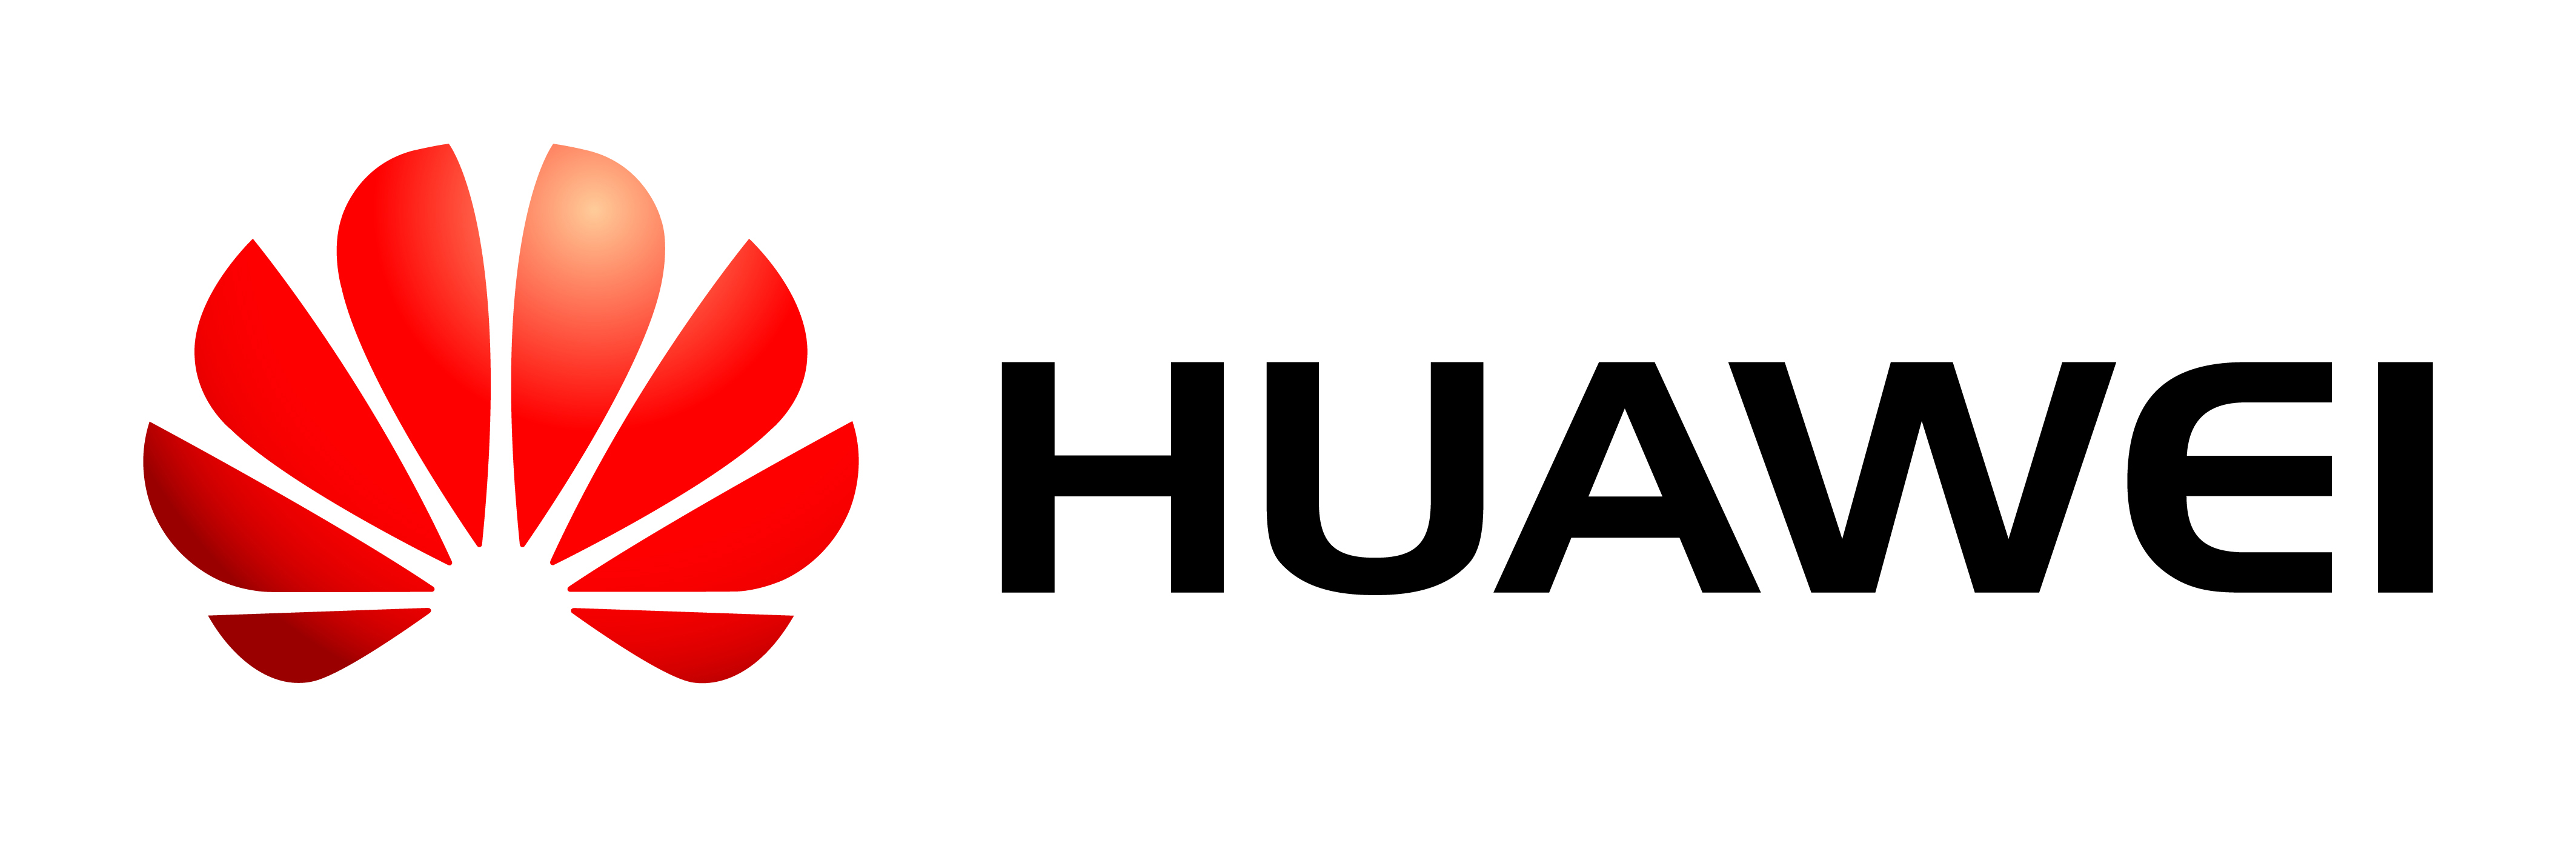 Huawei_Logo